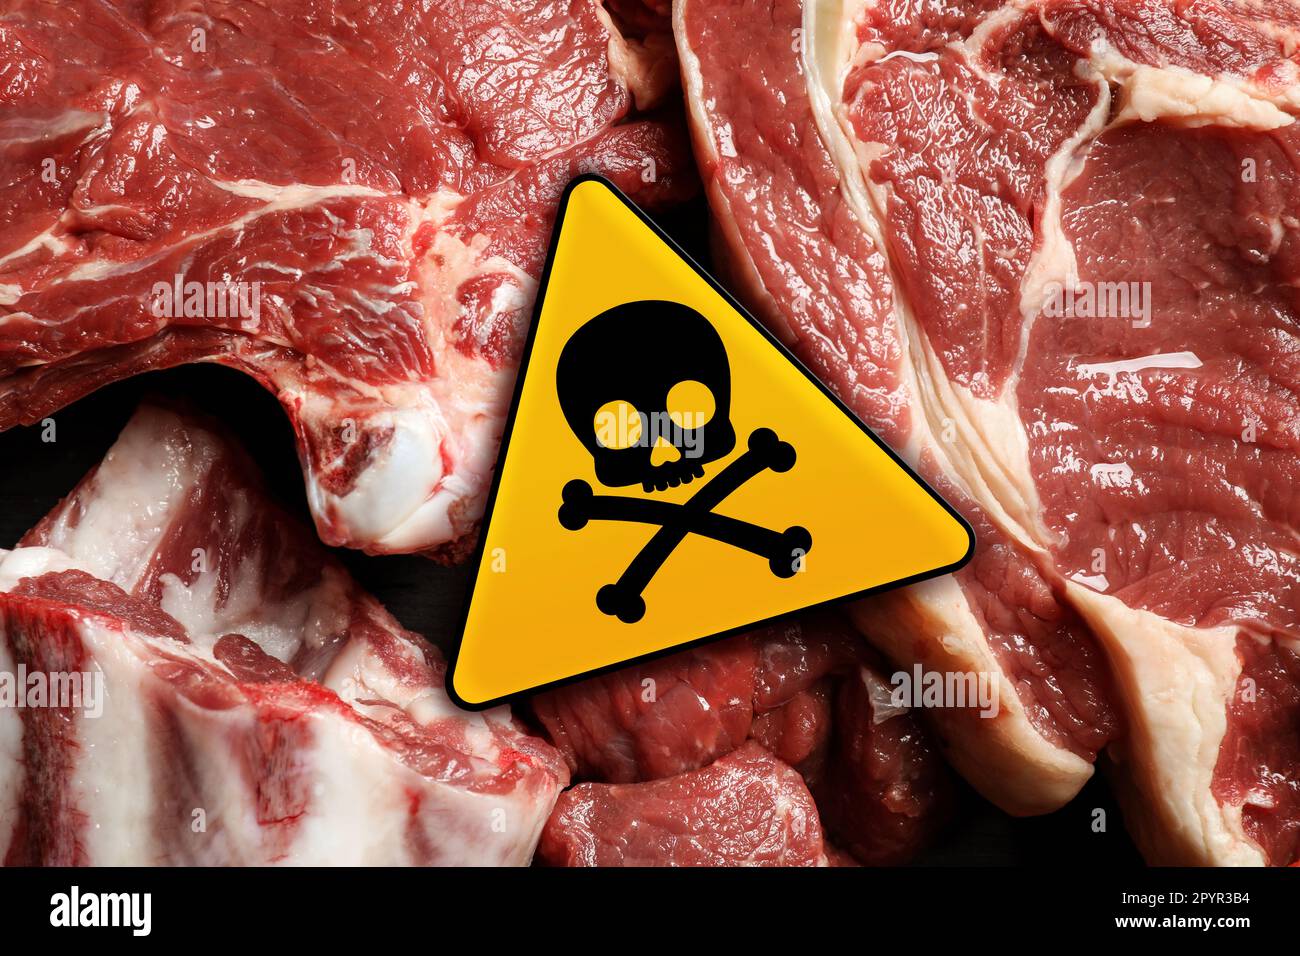 Cranio e crossone segno sulla carne cruda, vista dall'alto. Attenzione - tossico Foto Stock